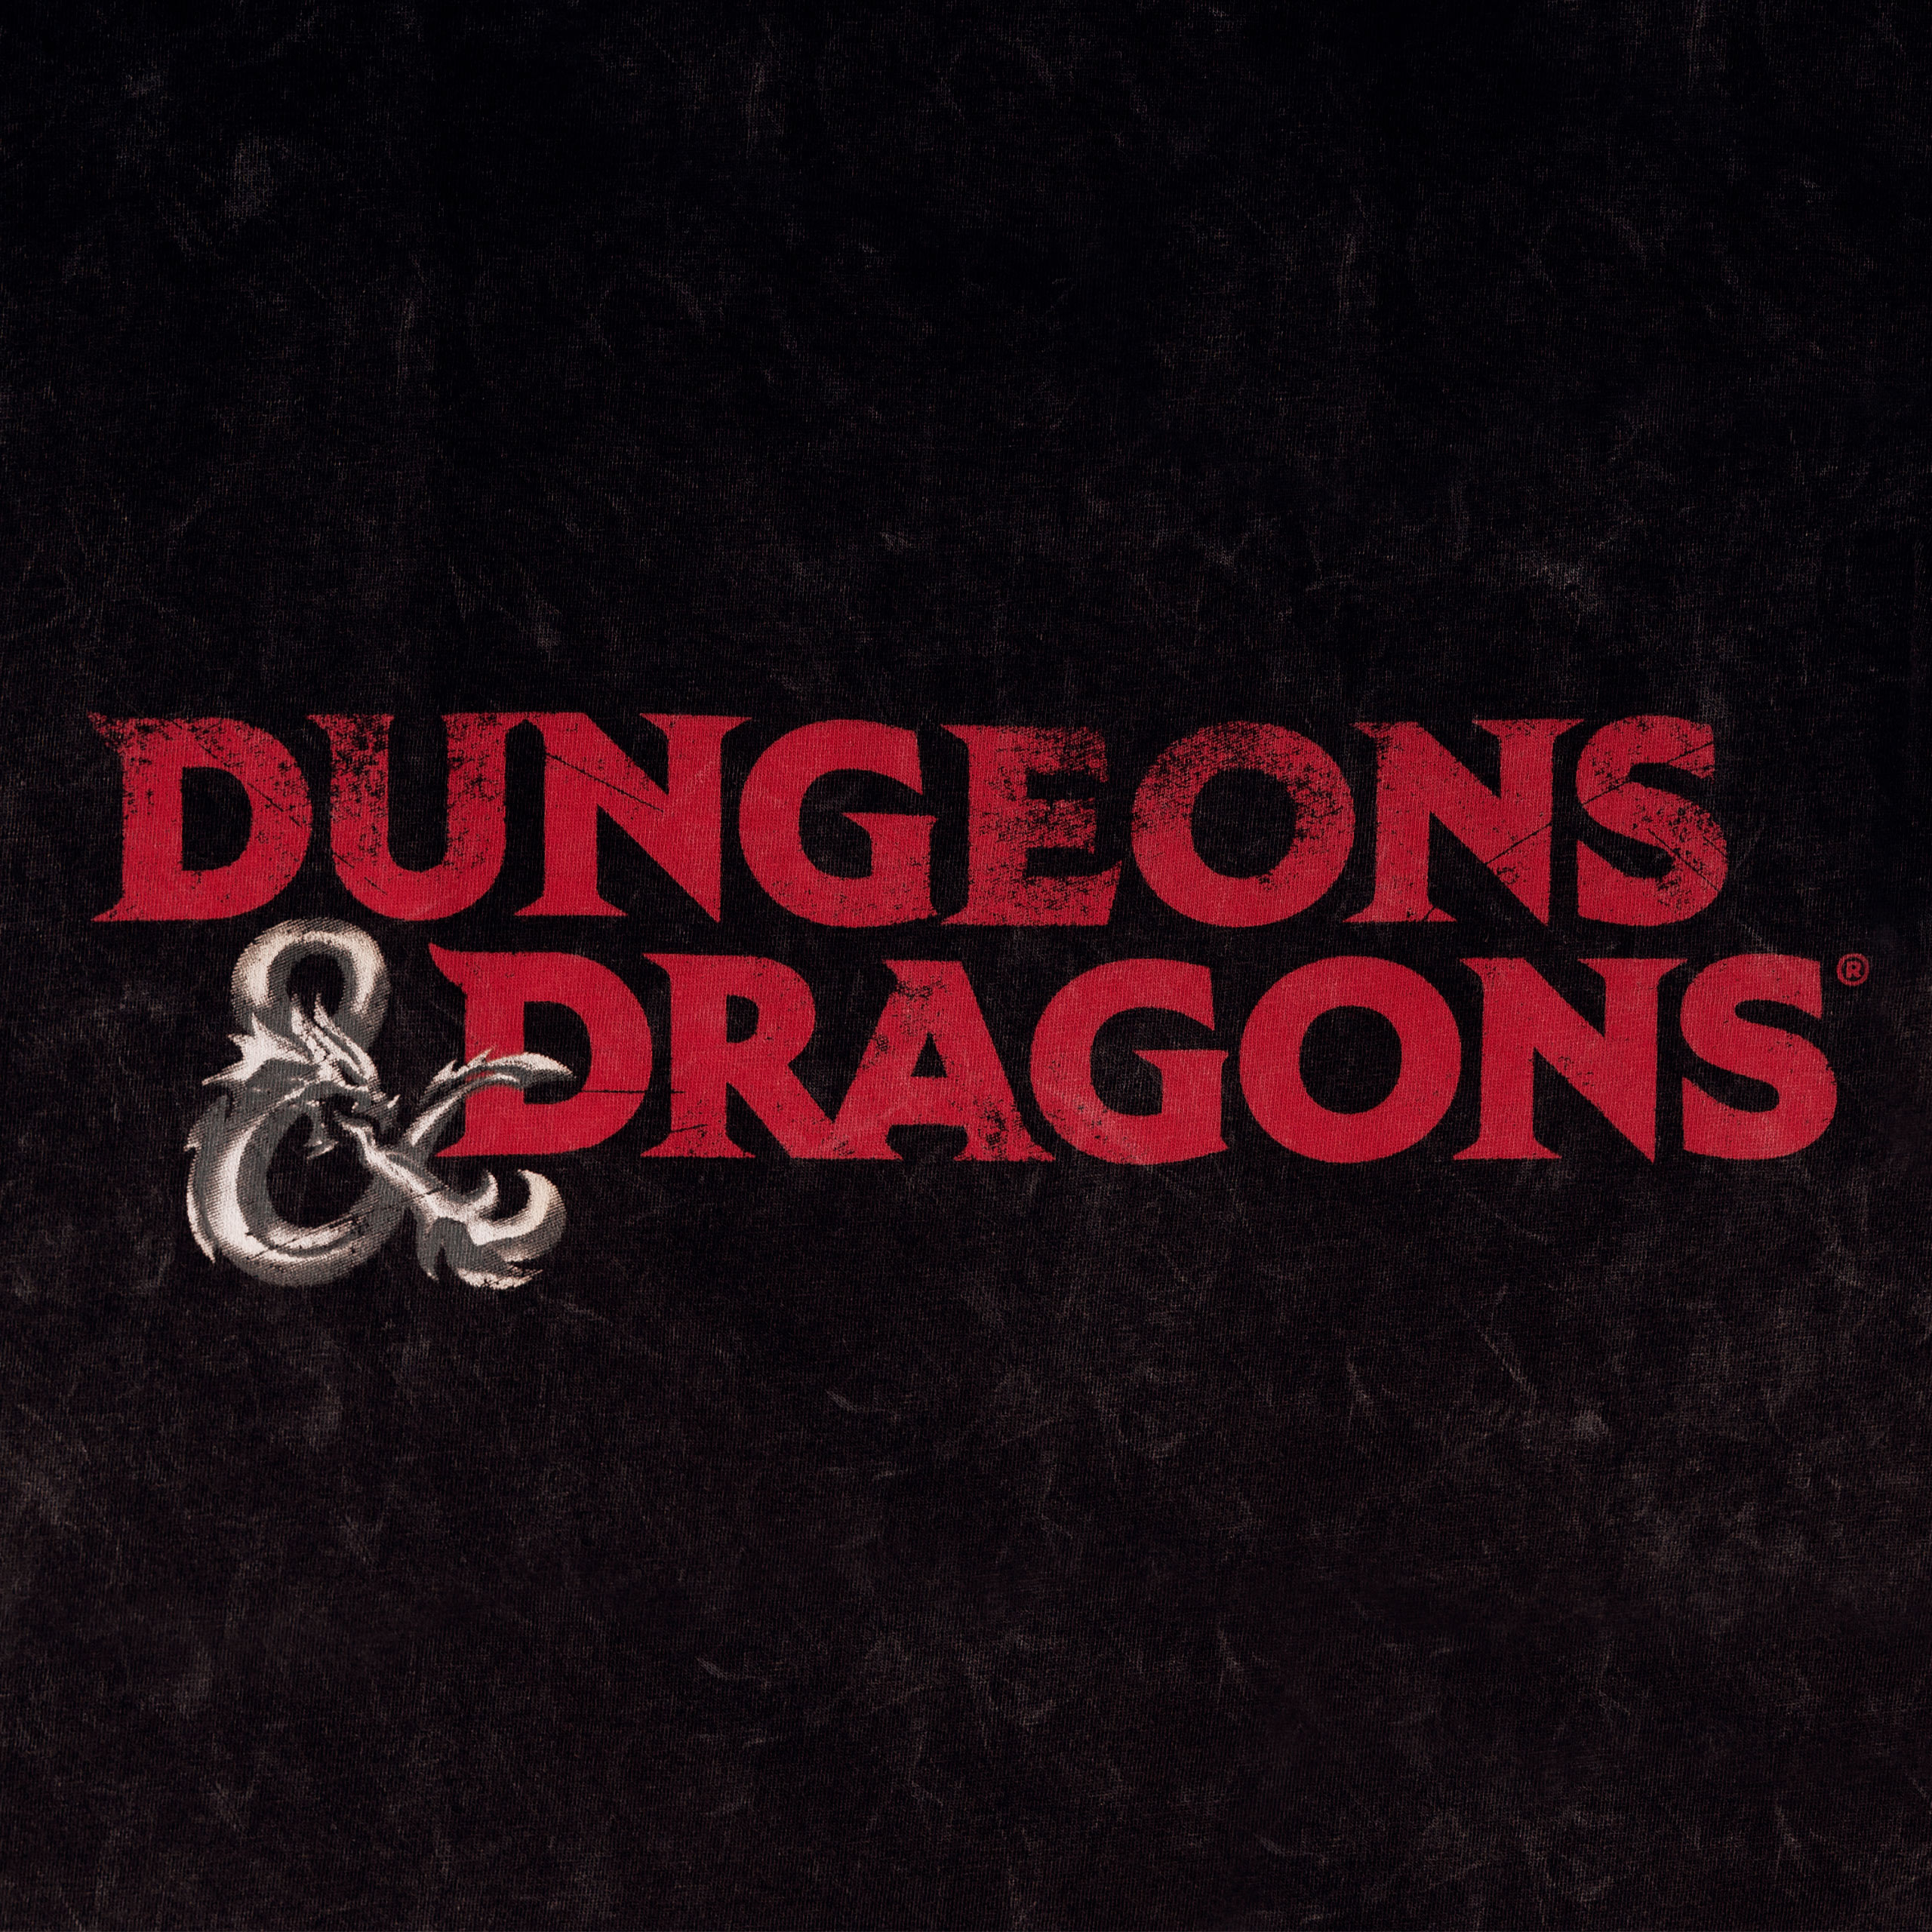 Dungeons & Dragons - Logo T-Shirt black